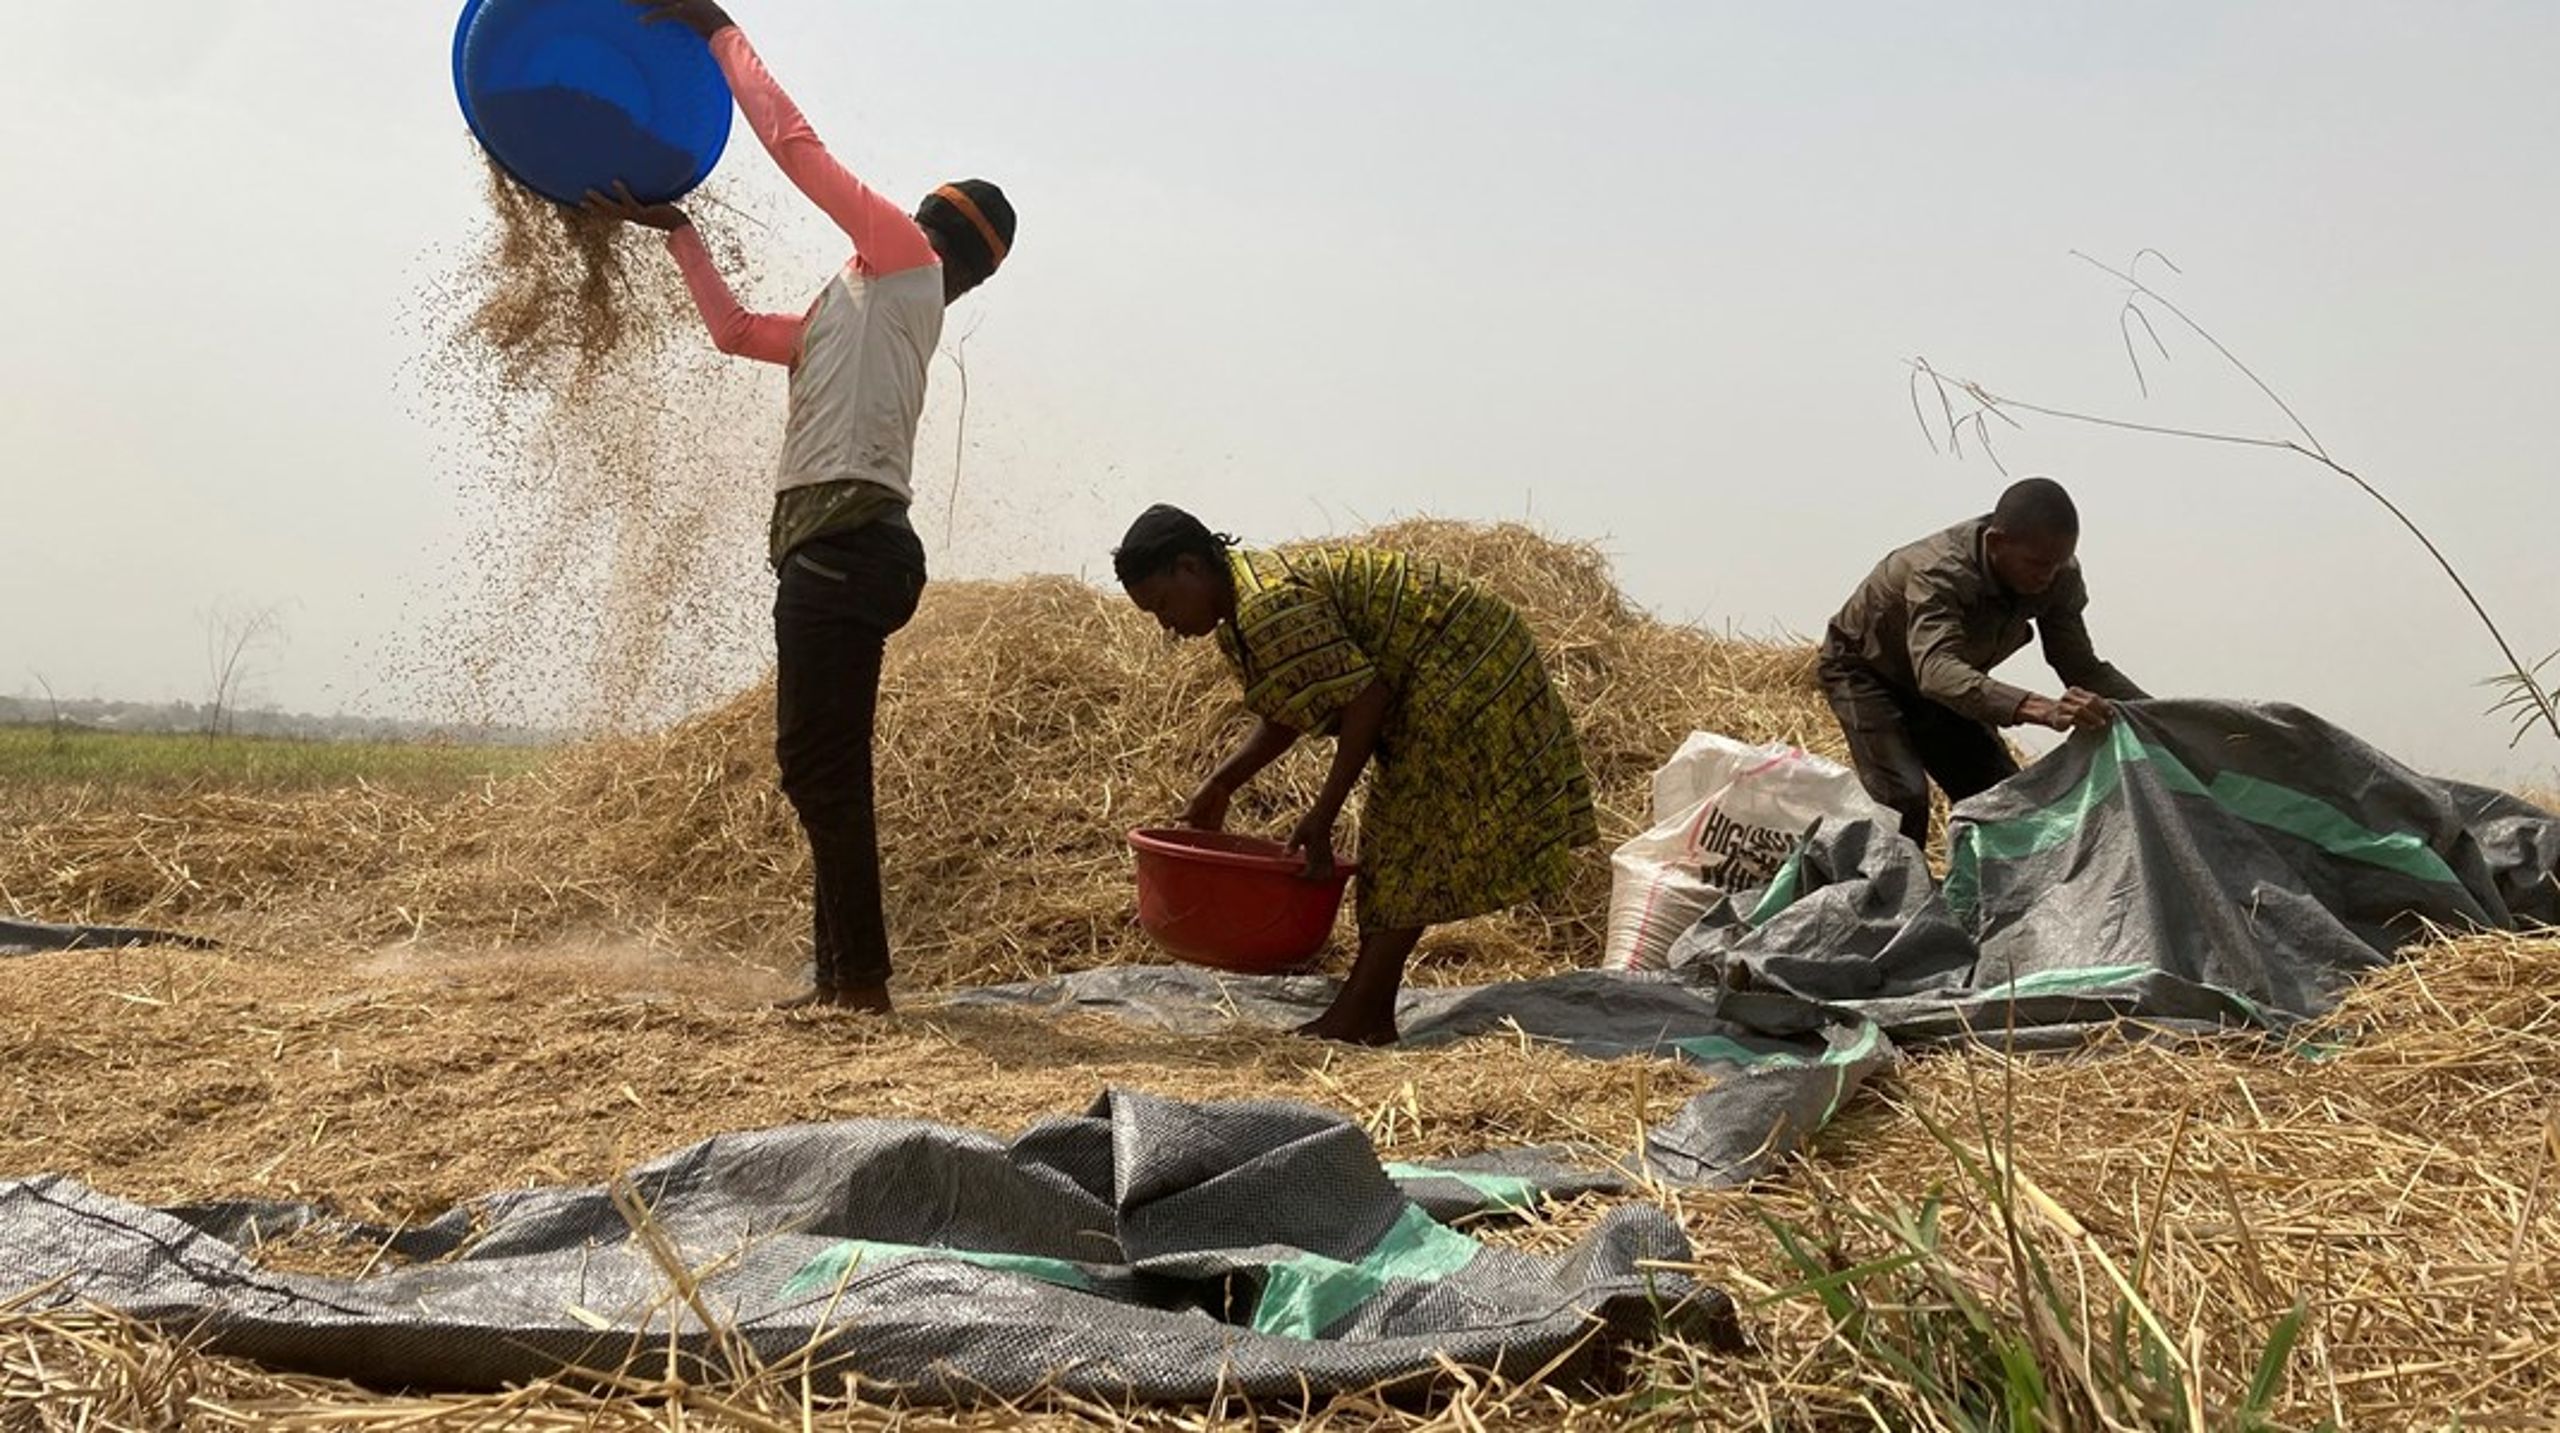 ”I utvecklingsländer är över hälften av befolkningen beroende av jordbruk för sin försörjning.”